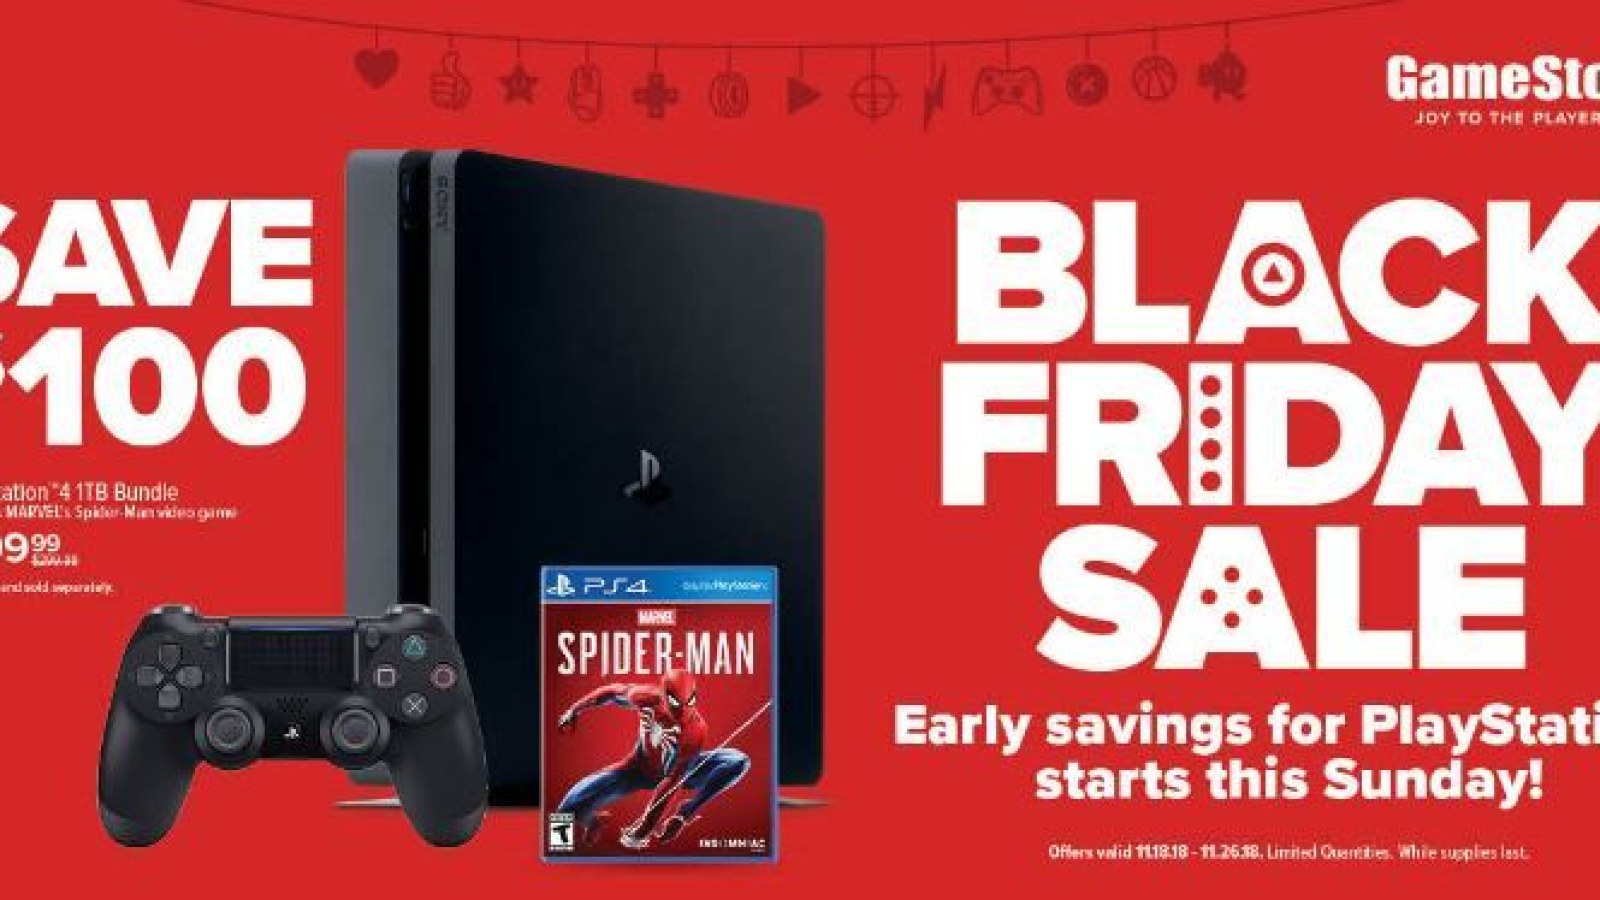 Portræt Sporvogn For pokker GameStop Black Friday 2018 Deals: Start Saving Early on Xbox One and PS4  Bundles